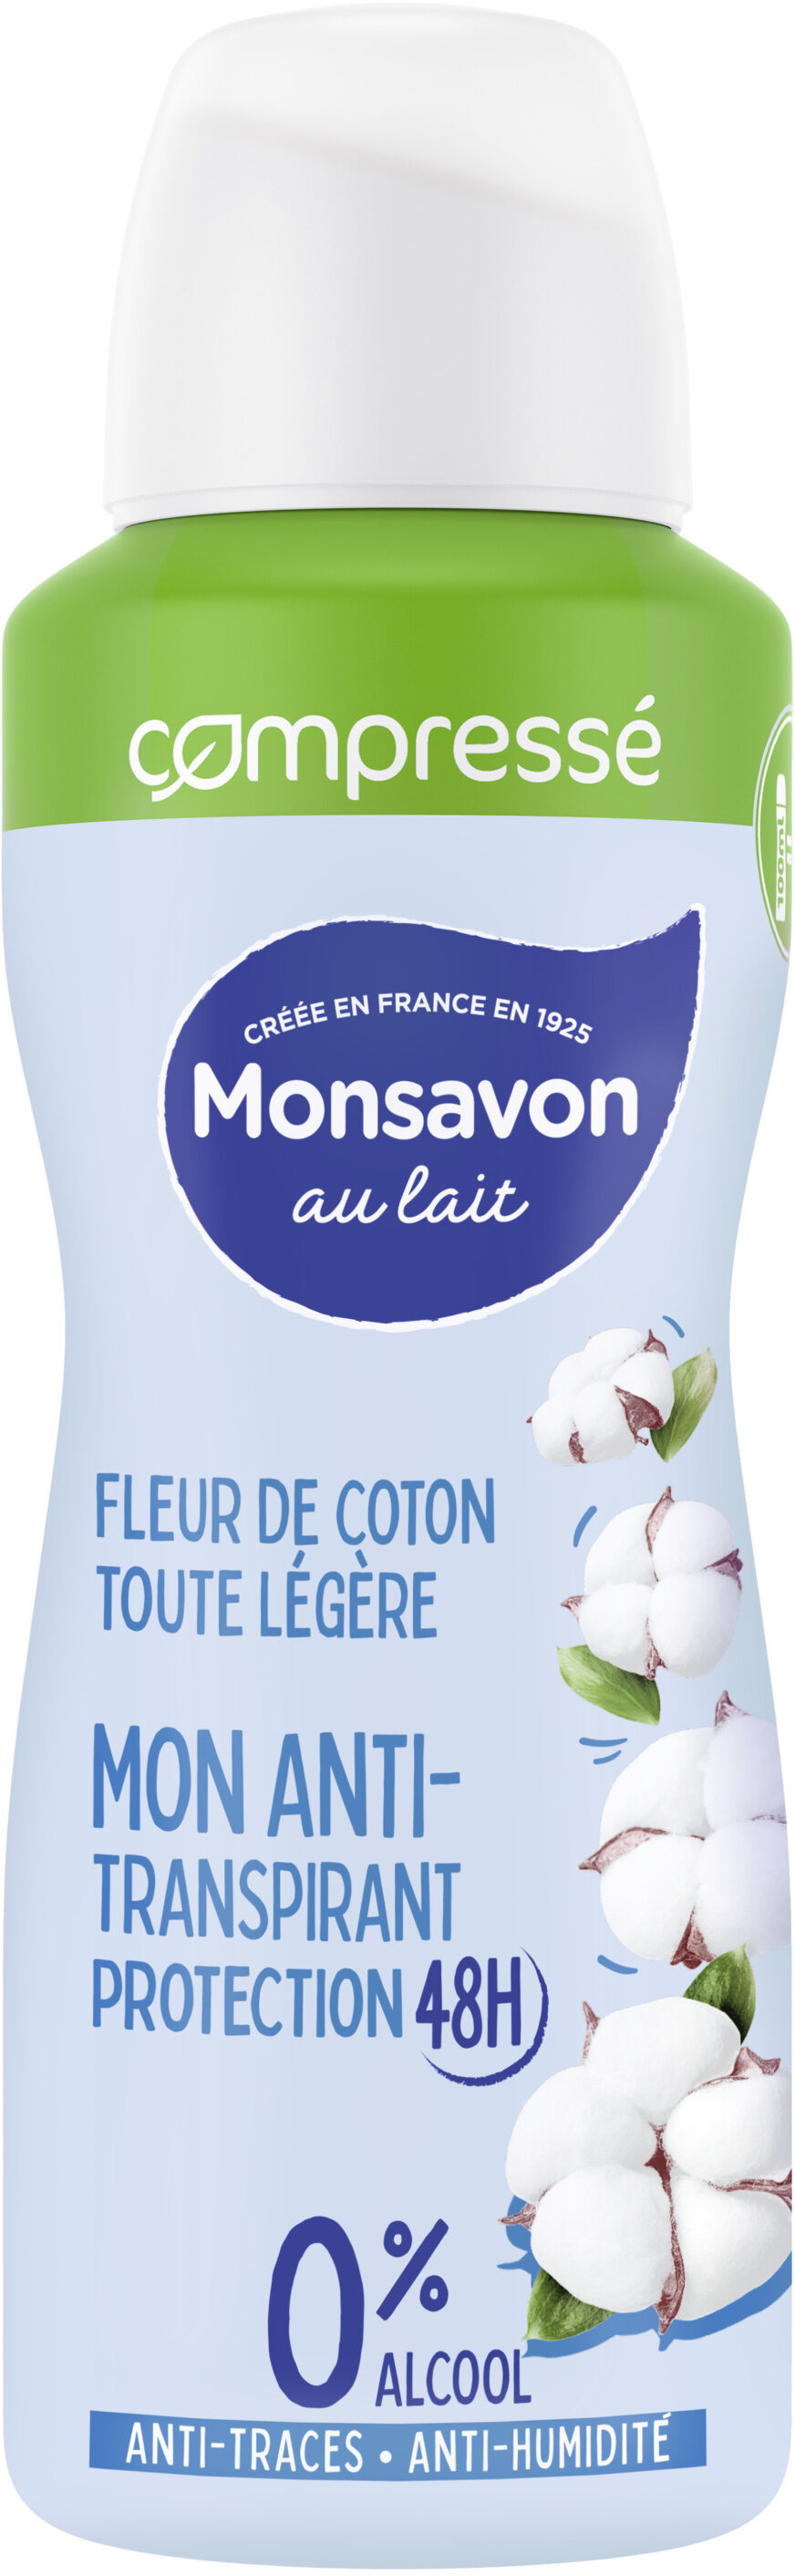 Monsavon Anti-Transpirant Femme Spray Compressé Fleur de Coton Toute Légère 100ml - Produit - fr